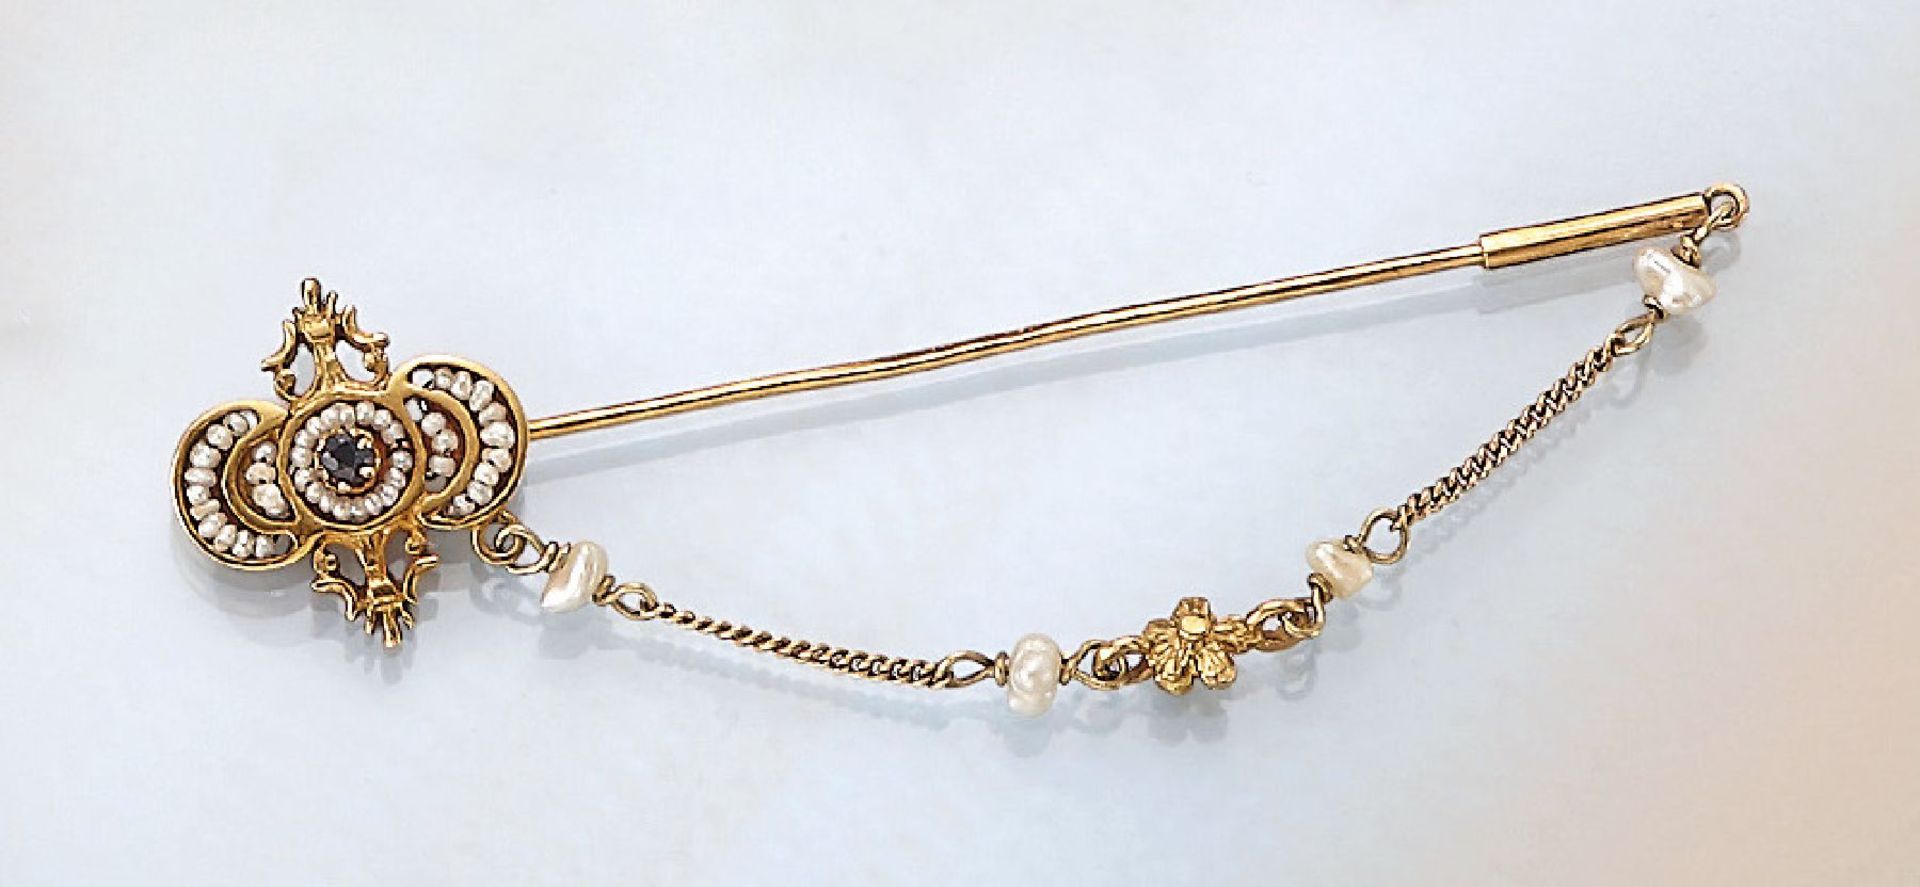 18 kt Gold Krawattennadel, wohl Frankreich um 1820, GG 750/000, feiner Guss, hervorragende